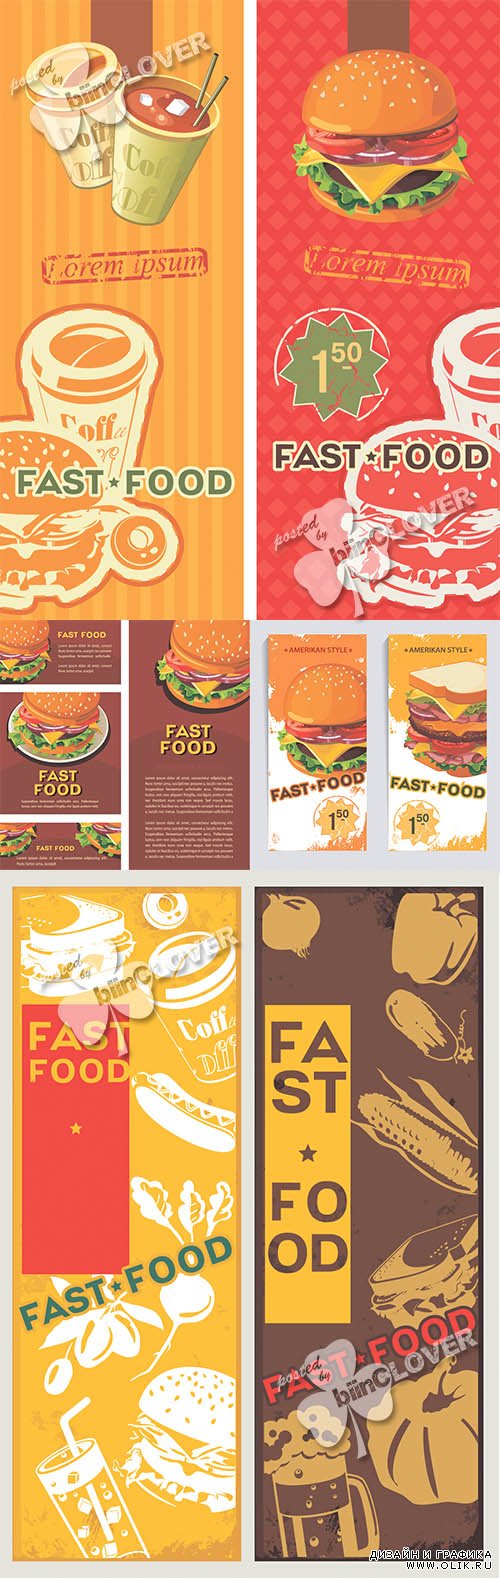 Retro fast food design 0481